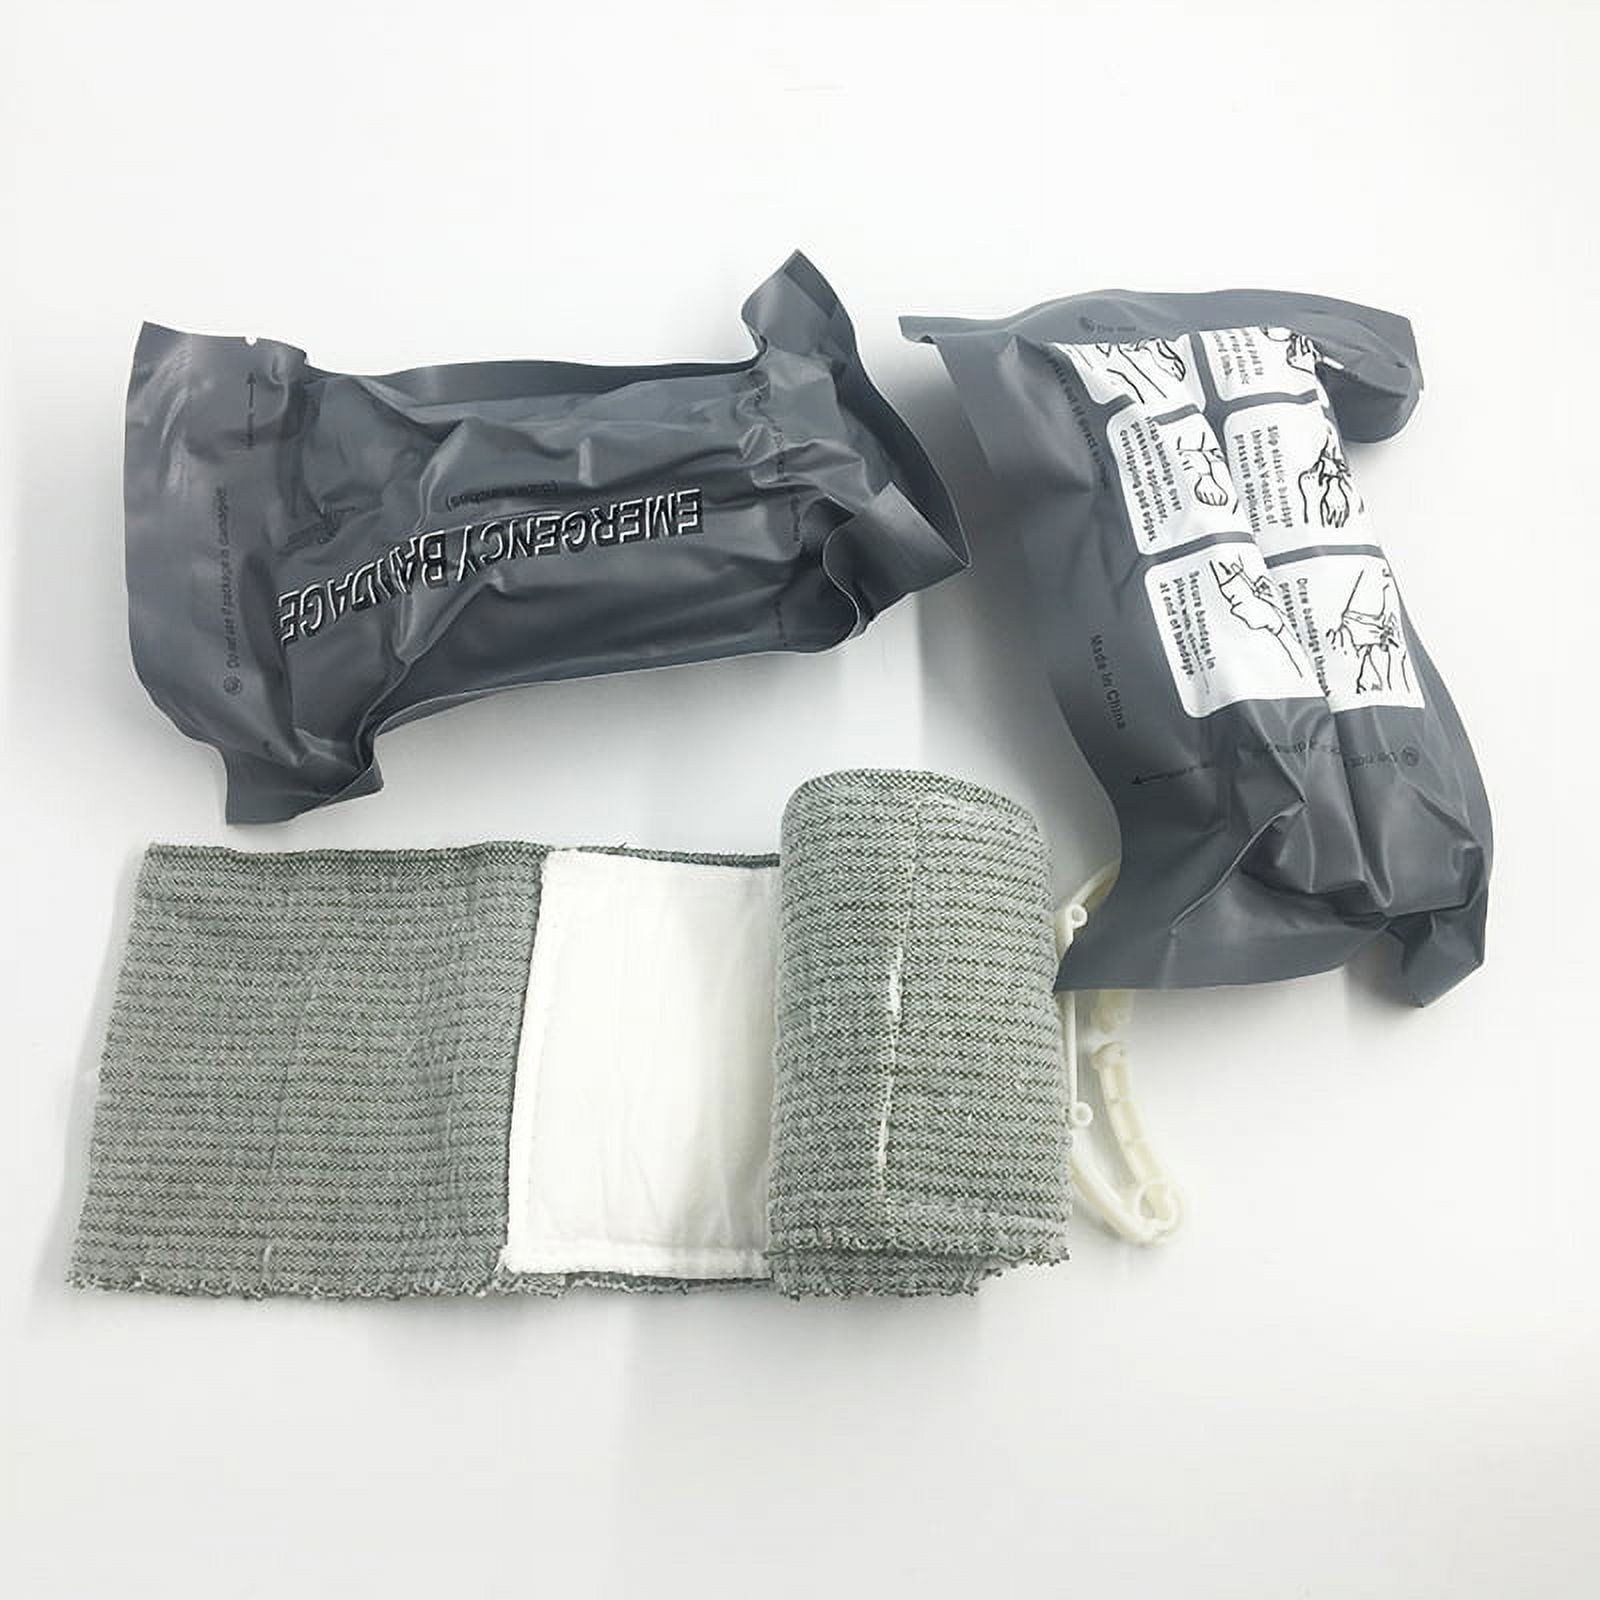 JETTINGBUY Madicare Israeli Bandage Trauma Dressing First Aid Compression  Emergency Bandage